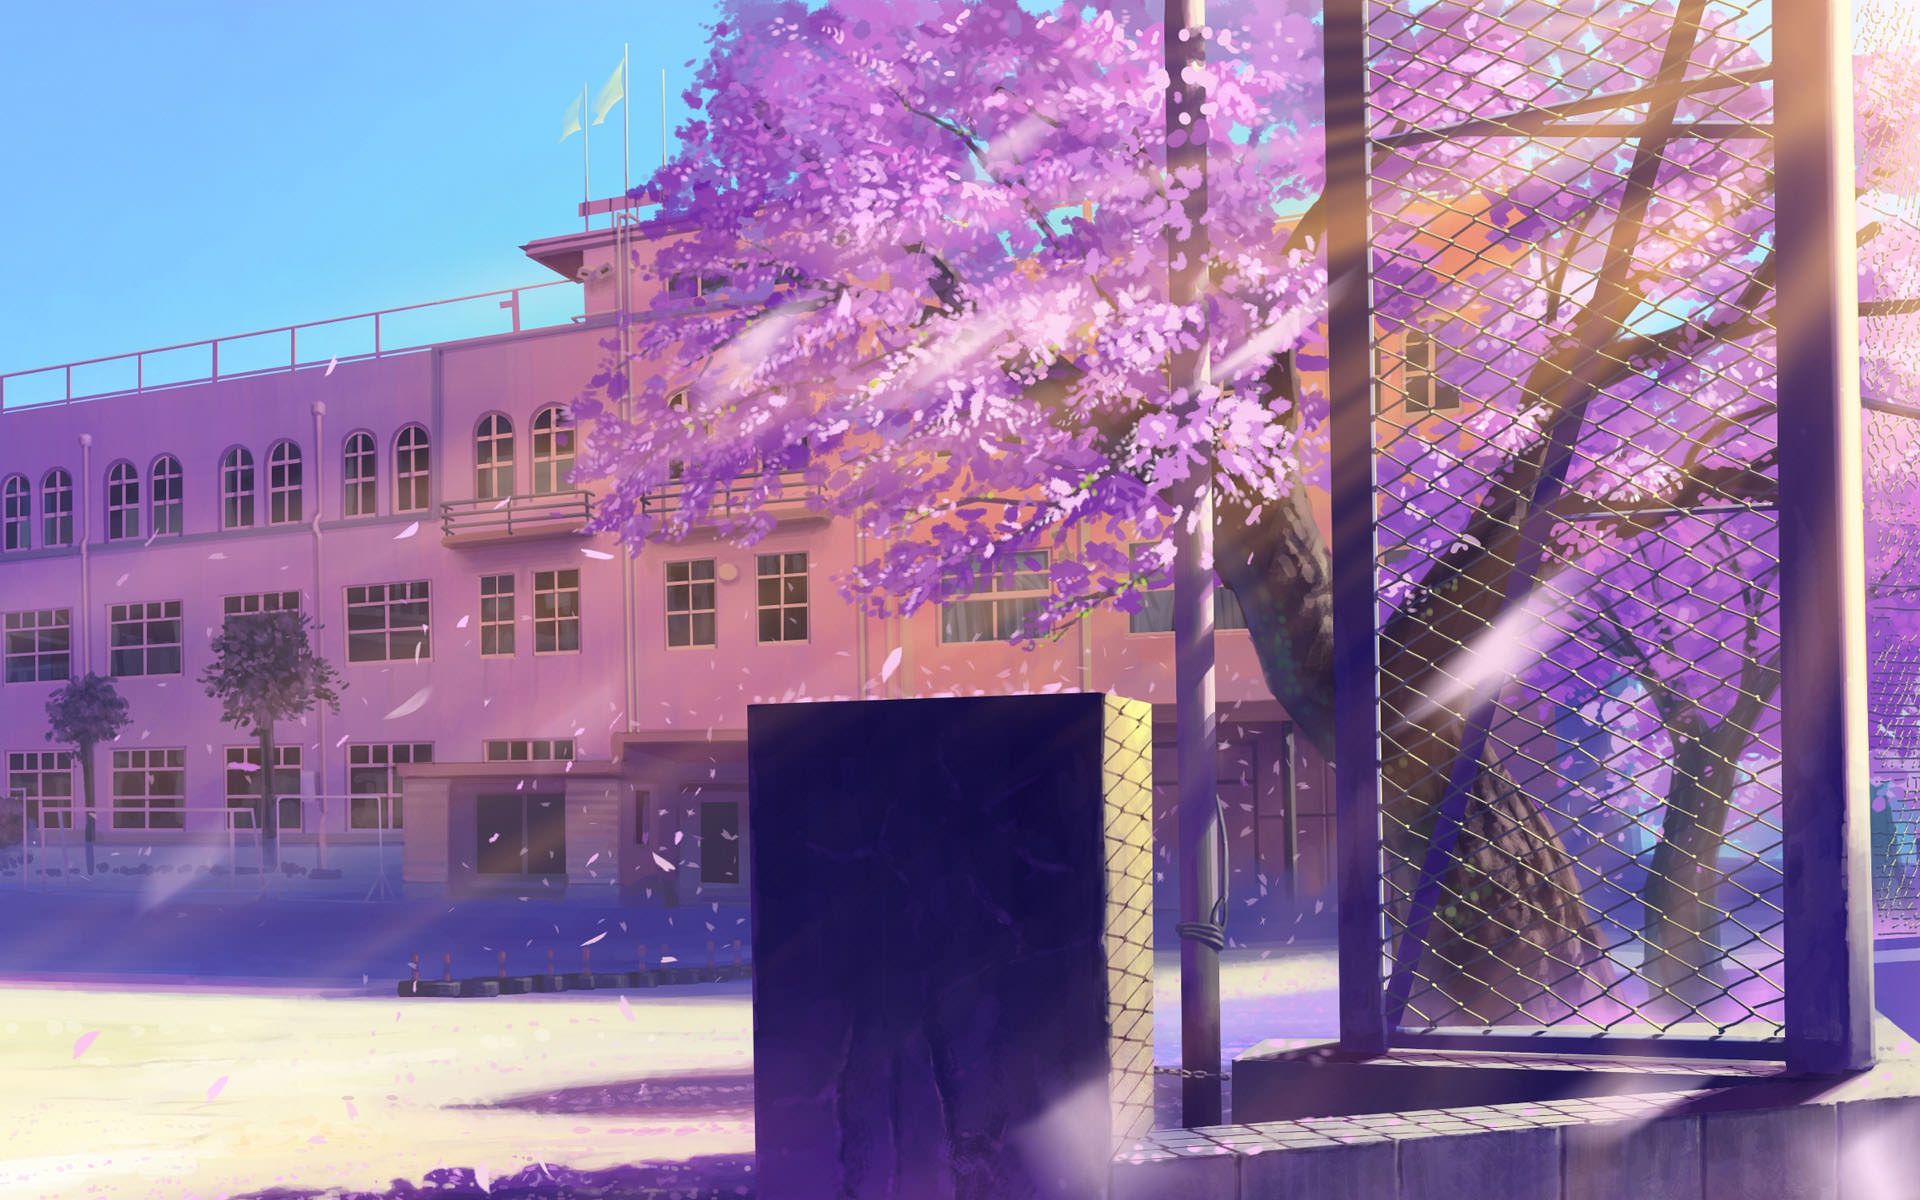 Hãy khám phá các bối cảnh trường học trong anime vô cùng đẹp mắt và sinh động. Với những cảnh quay tuyệt đẹp, bạn sẽ có cơ hội tận hưởng khoảnh khắc trở về tuổi học trò một cách chân thực nhất.